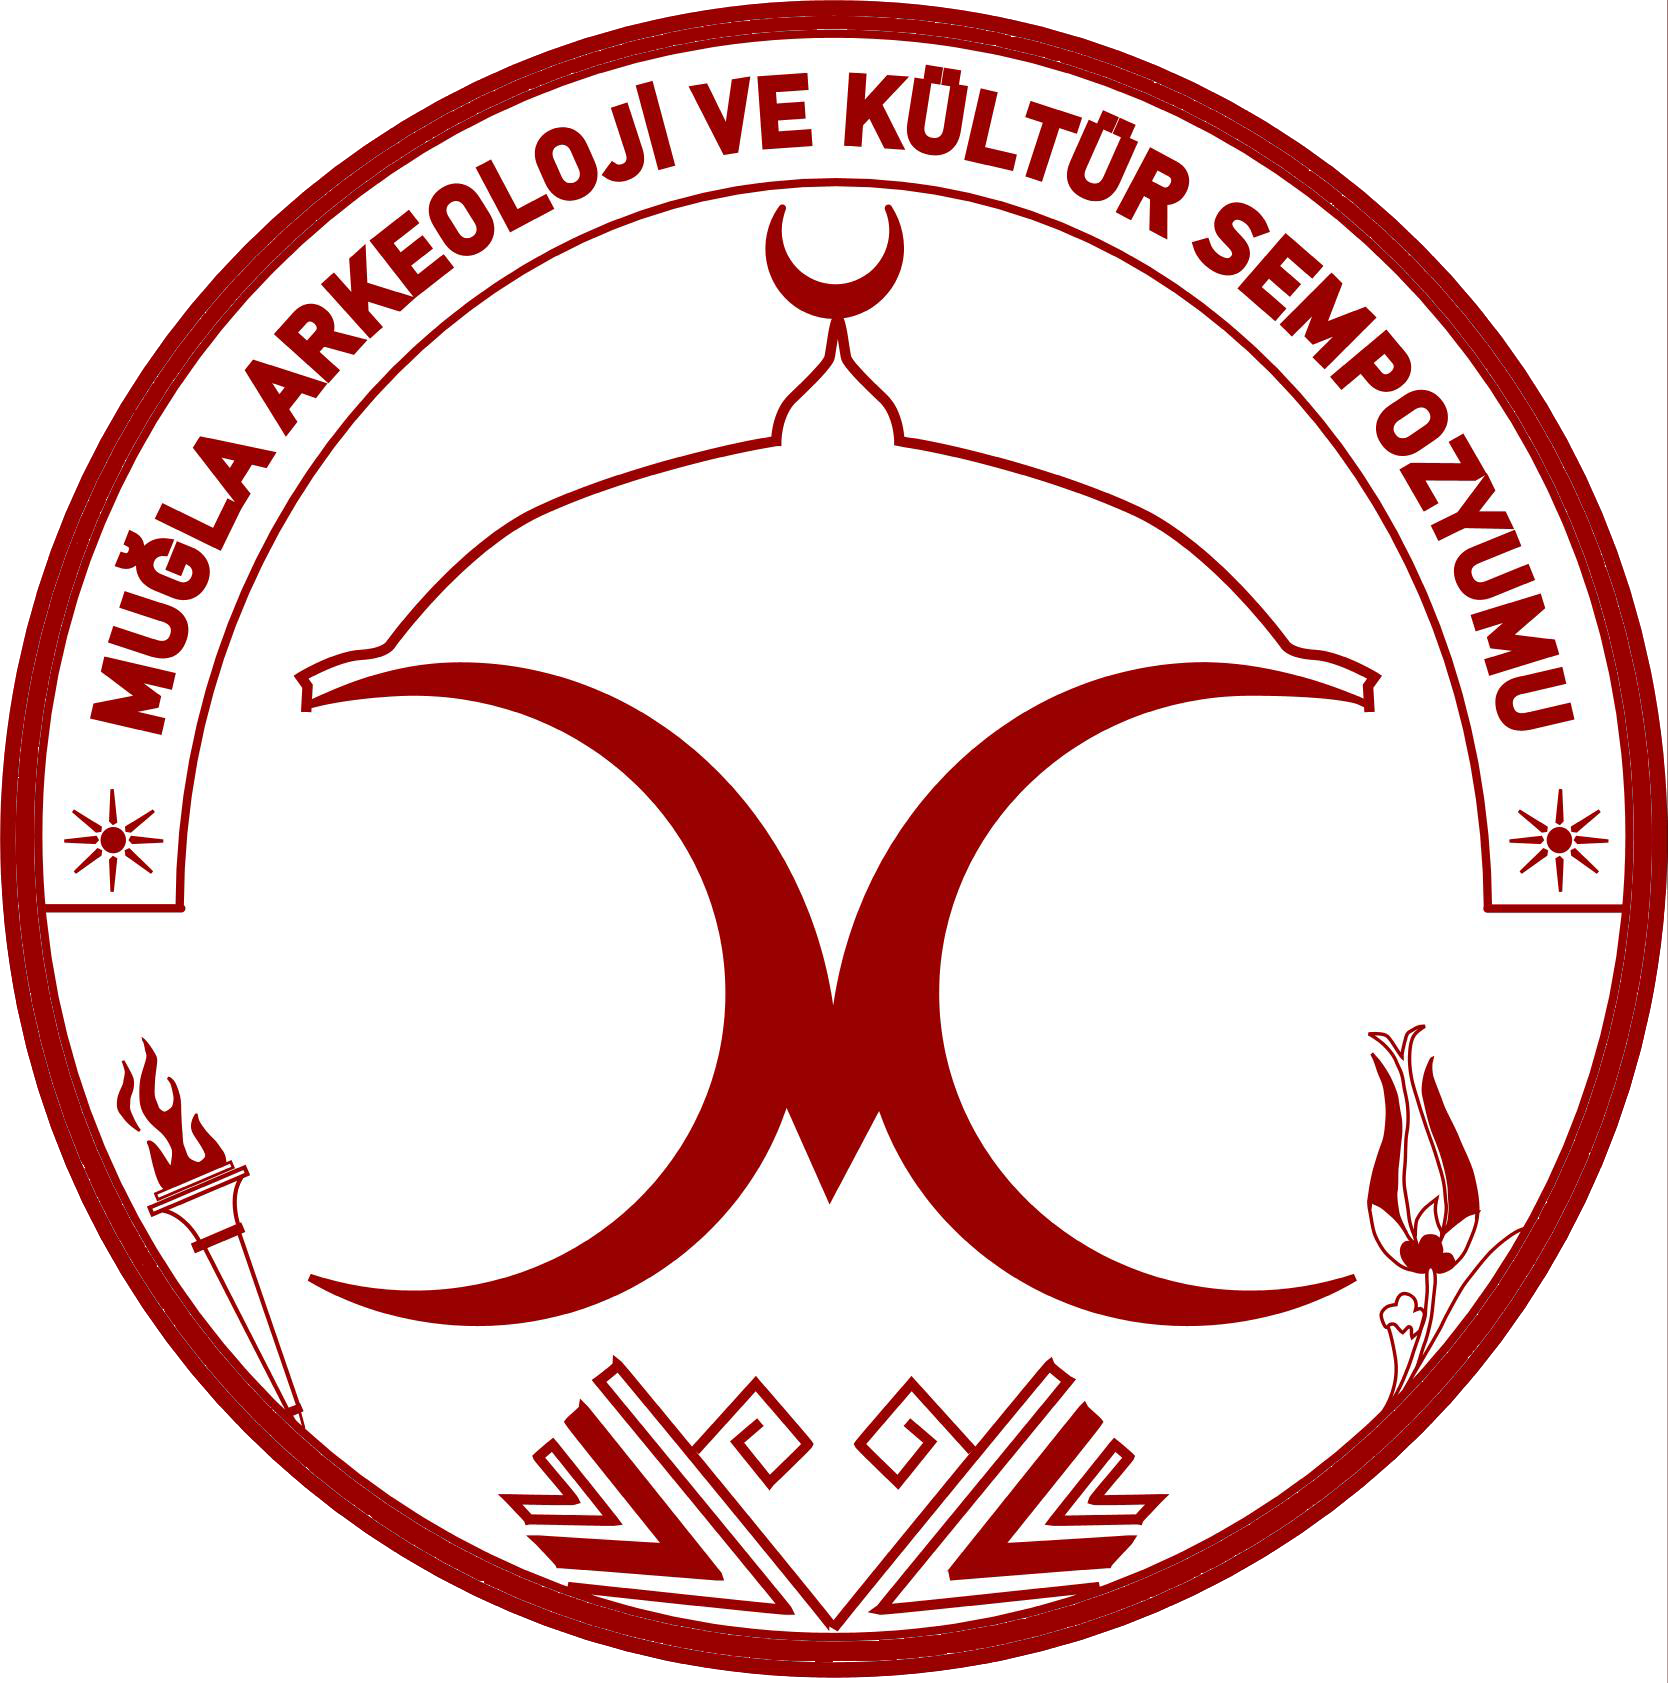 Muğla Arkeoloji ve Kültür Sempozyumu Logo.png